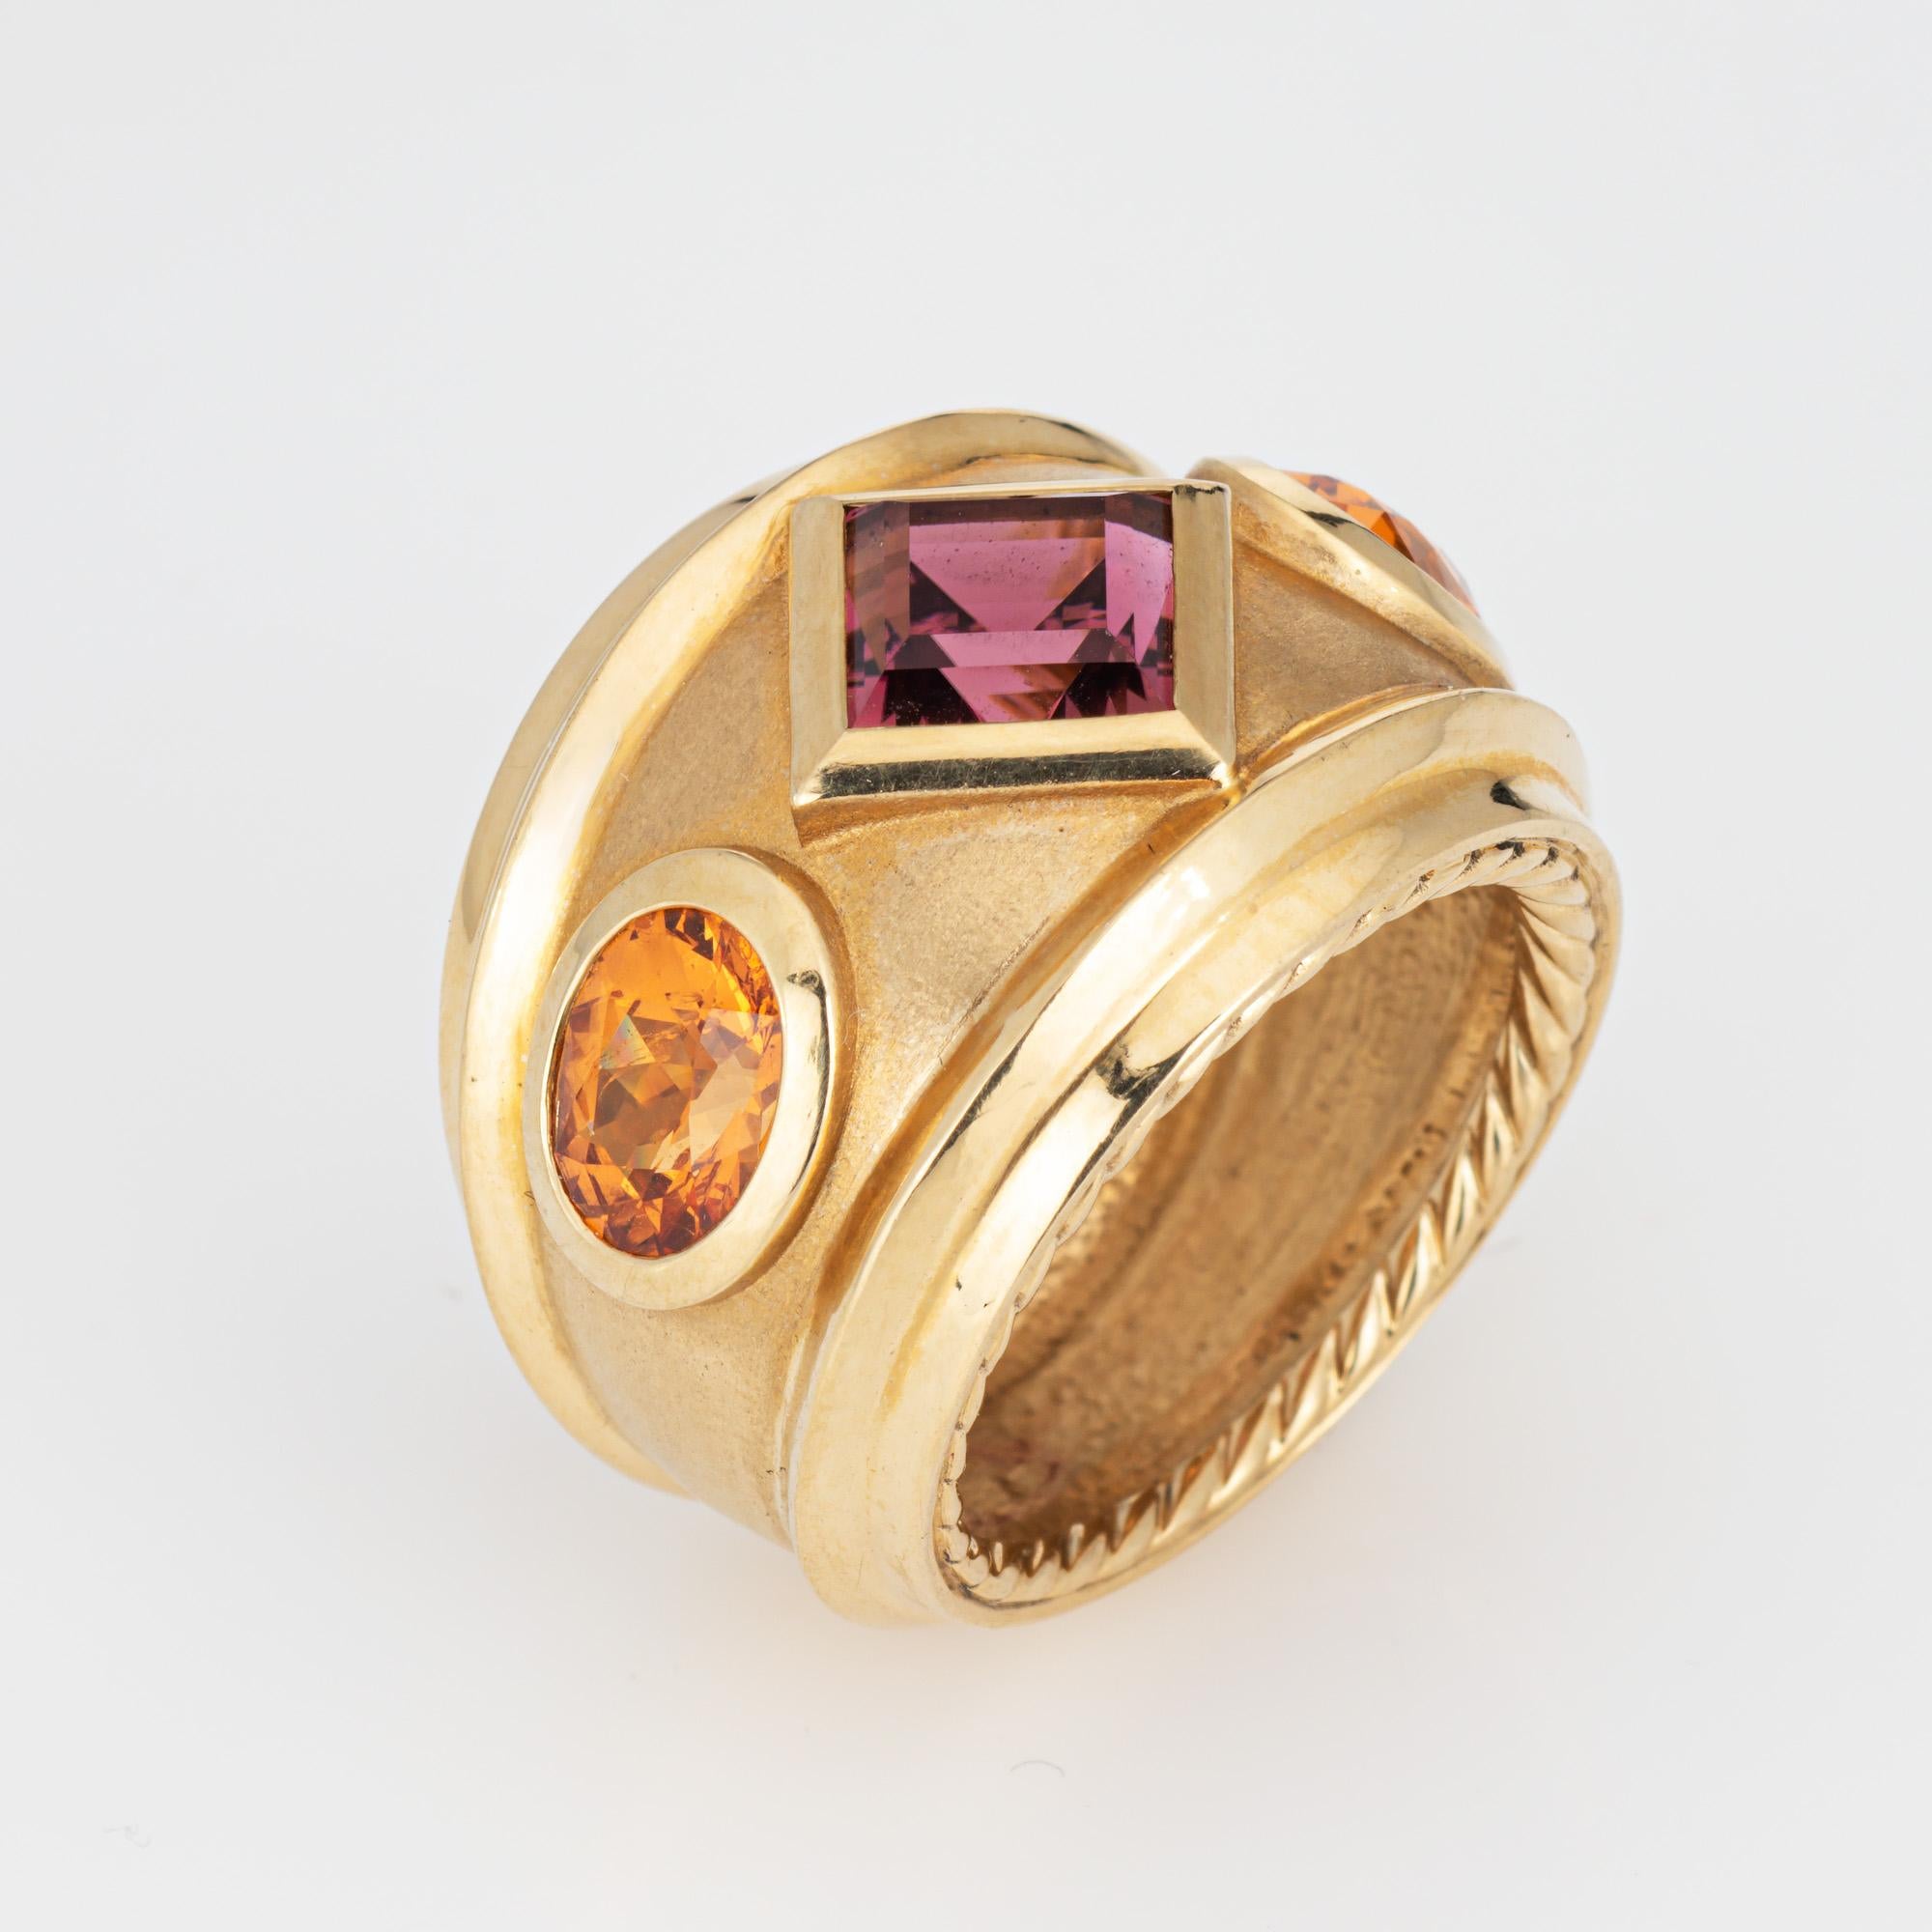 Nachlass David Yurman Renaissance Ring in 18 Karat gelb gefertigt.  

Die aus der Produktion David Yurman Ring ist mit einem Zentrum gesetzt Rhodolith Granat Messung 6mm. Zwei Zitrine messen 7 mm x 5,5 mm. Die Edelsteine sind in sehr gutem Zustand